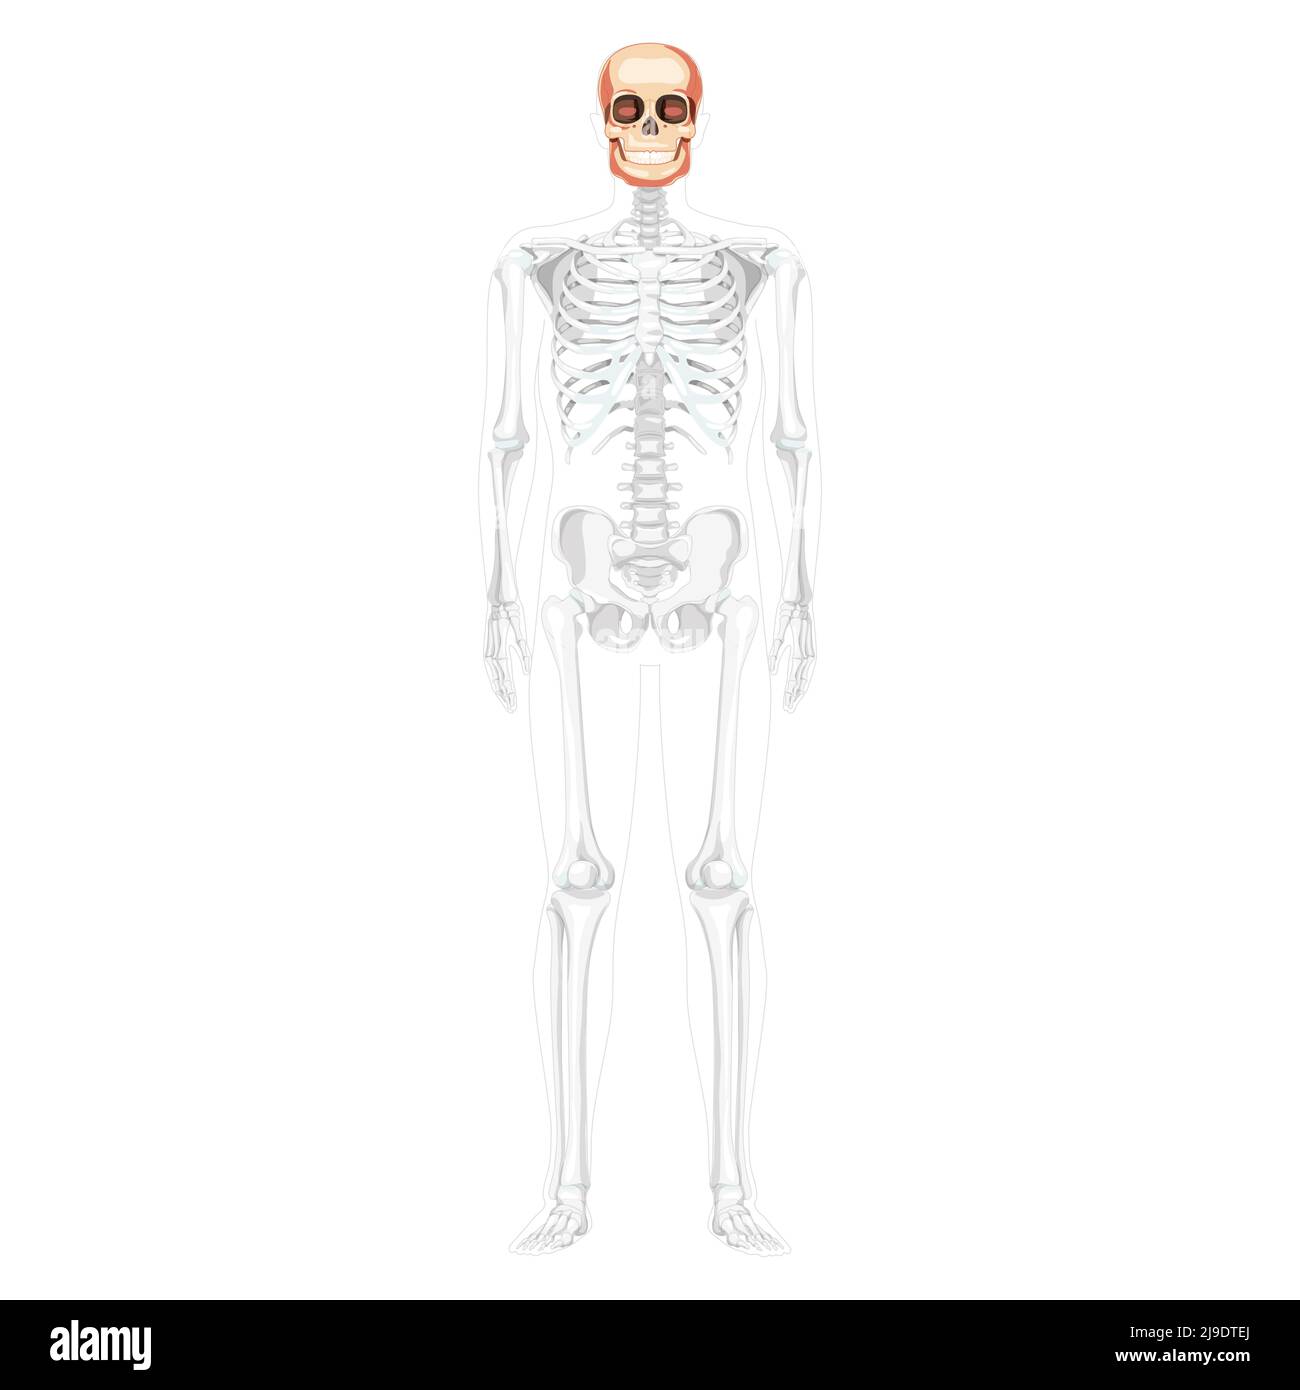 Tête humaine Skull Skeleton vue avant avec les mains latérales partiellement transparente position du corps. Anatomiquement correct. Modèle réaliste et plat de couleur naturelle illustration vectorielle isolée sur fond blanc Illustration de Vecteur